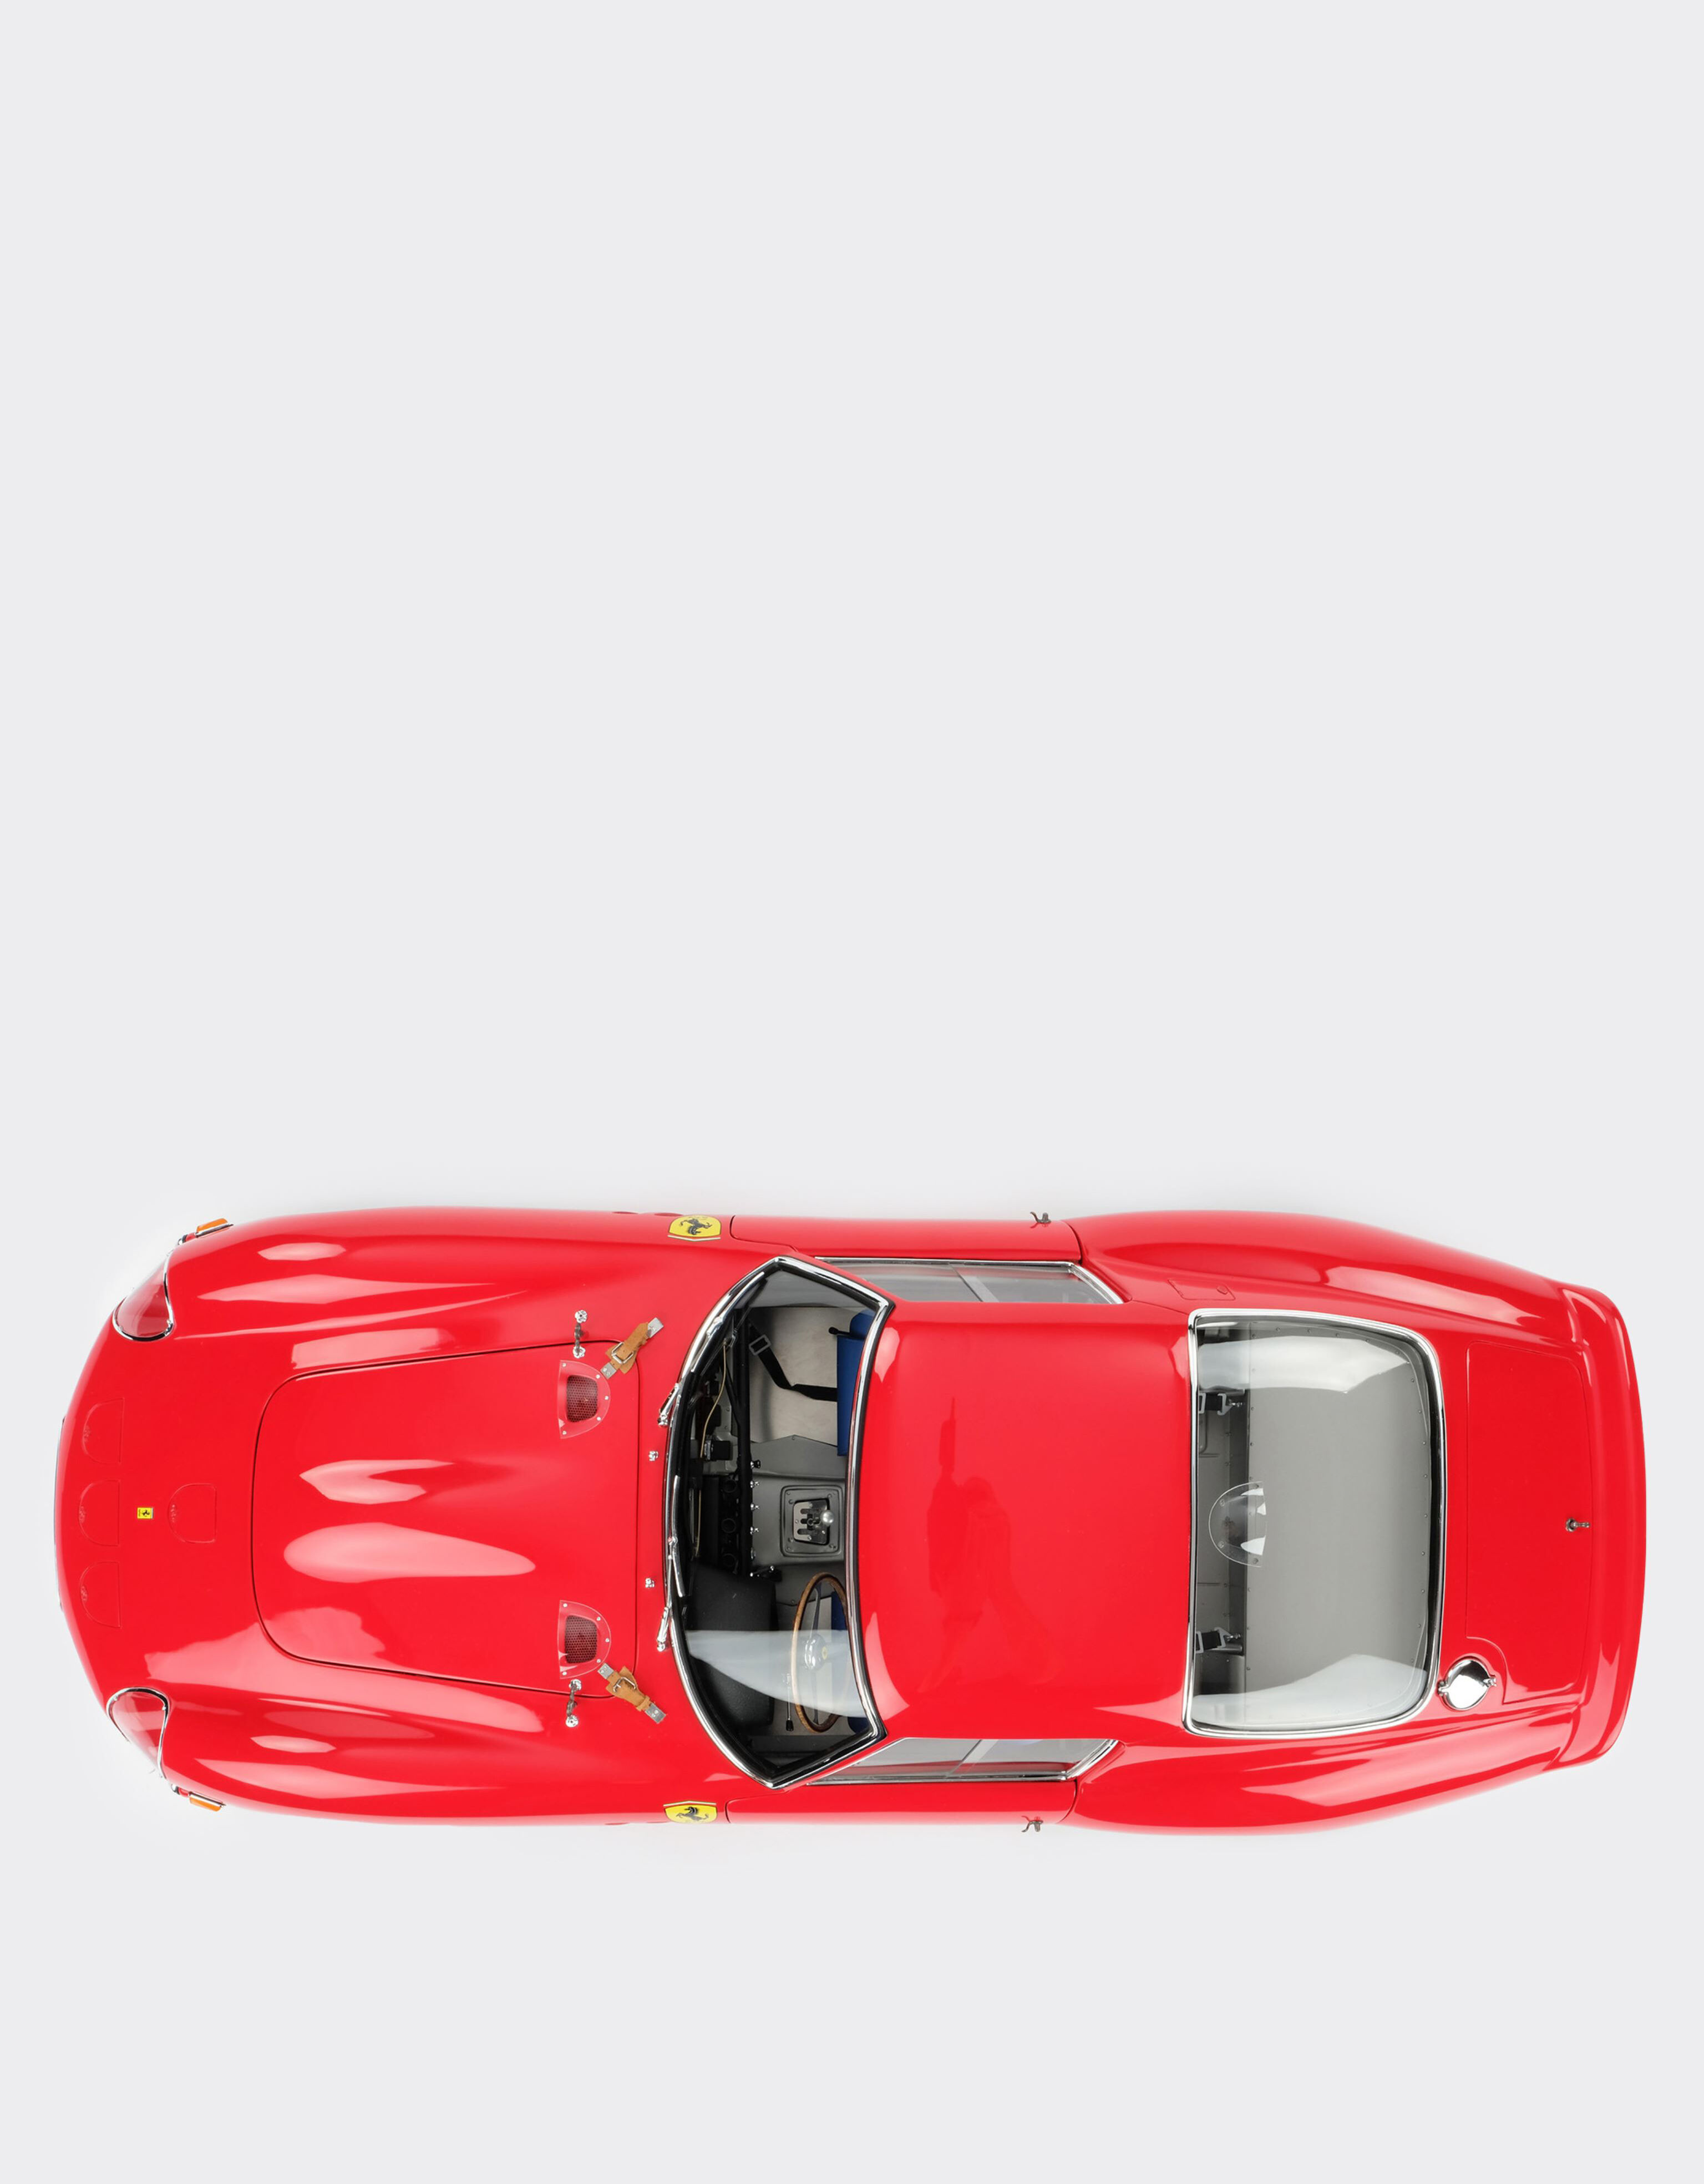 Ferrari Maqueta Ferrari 250 GTO a escala 1:8 MULTICOLOR L1127f